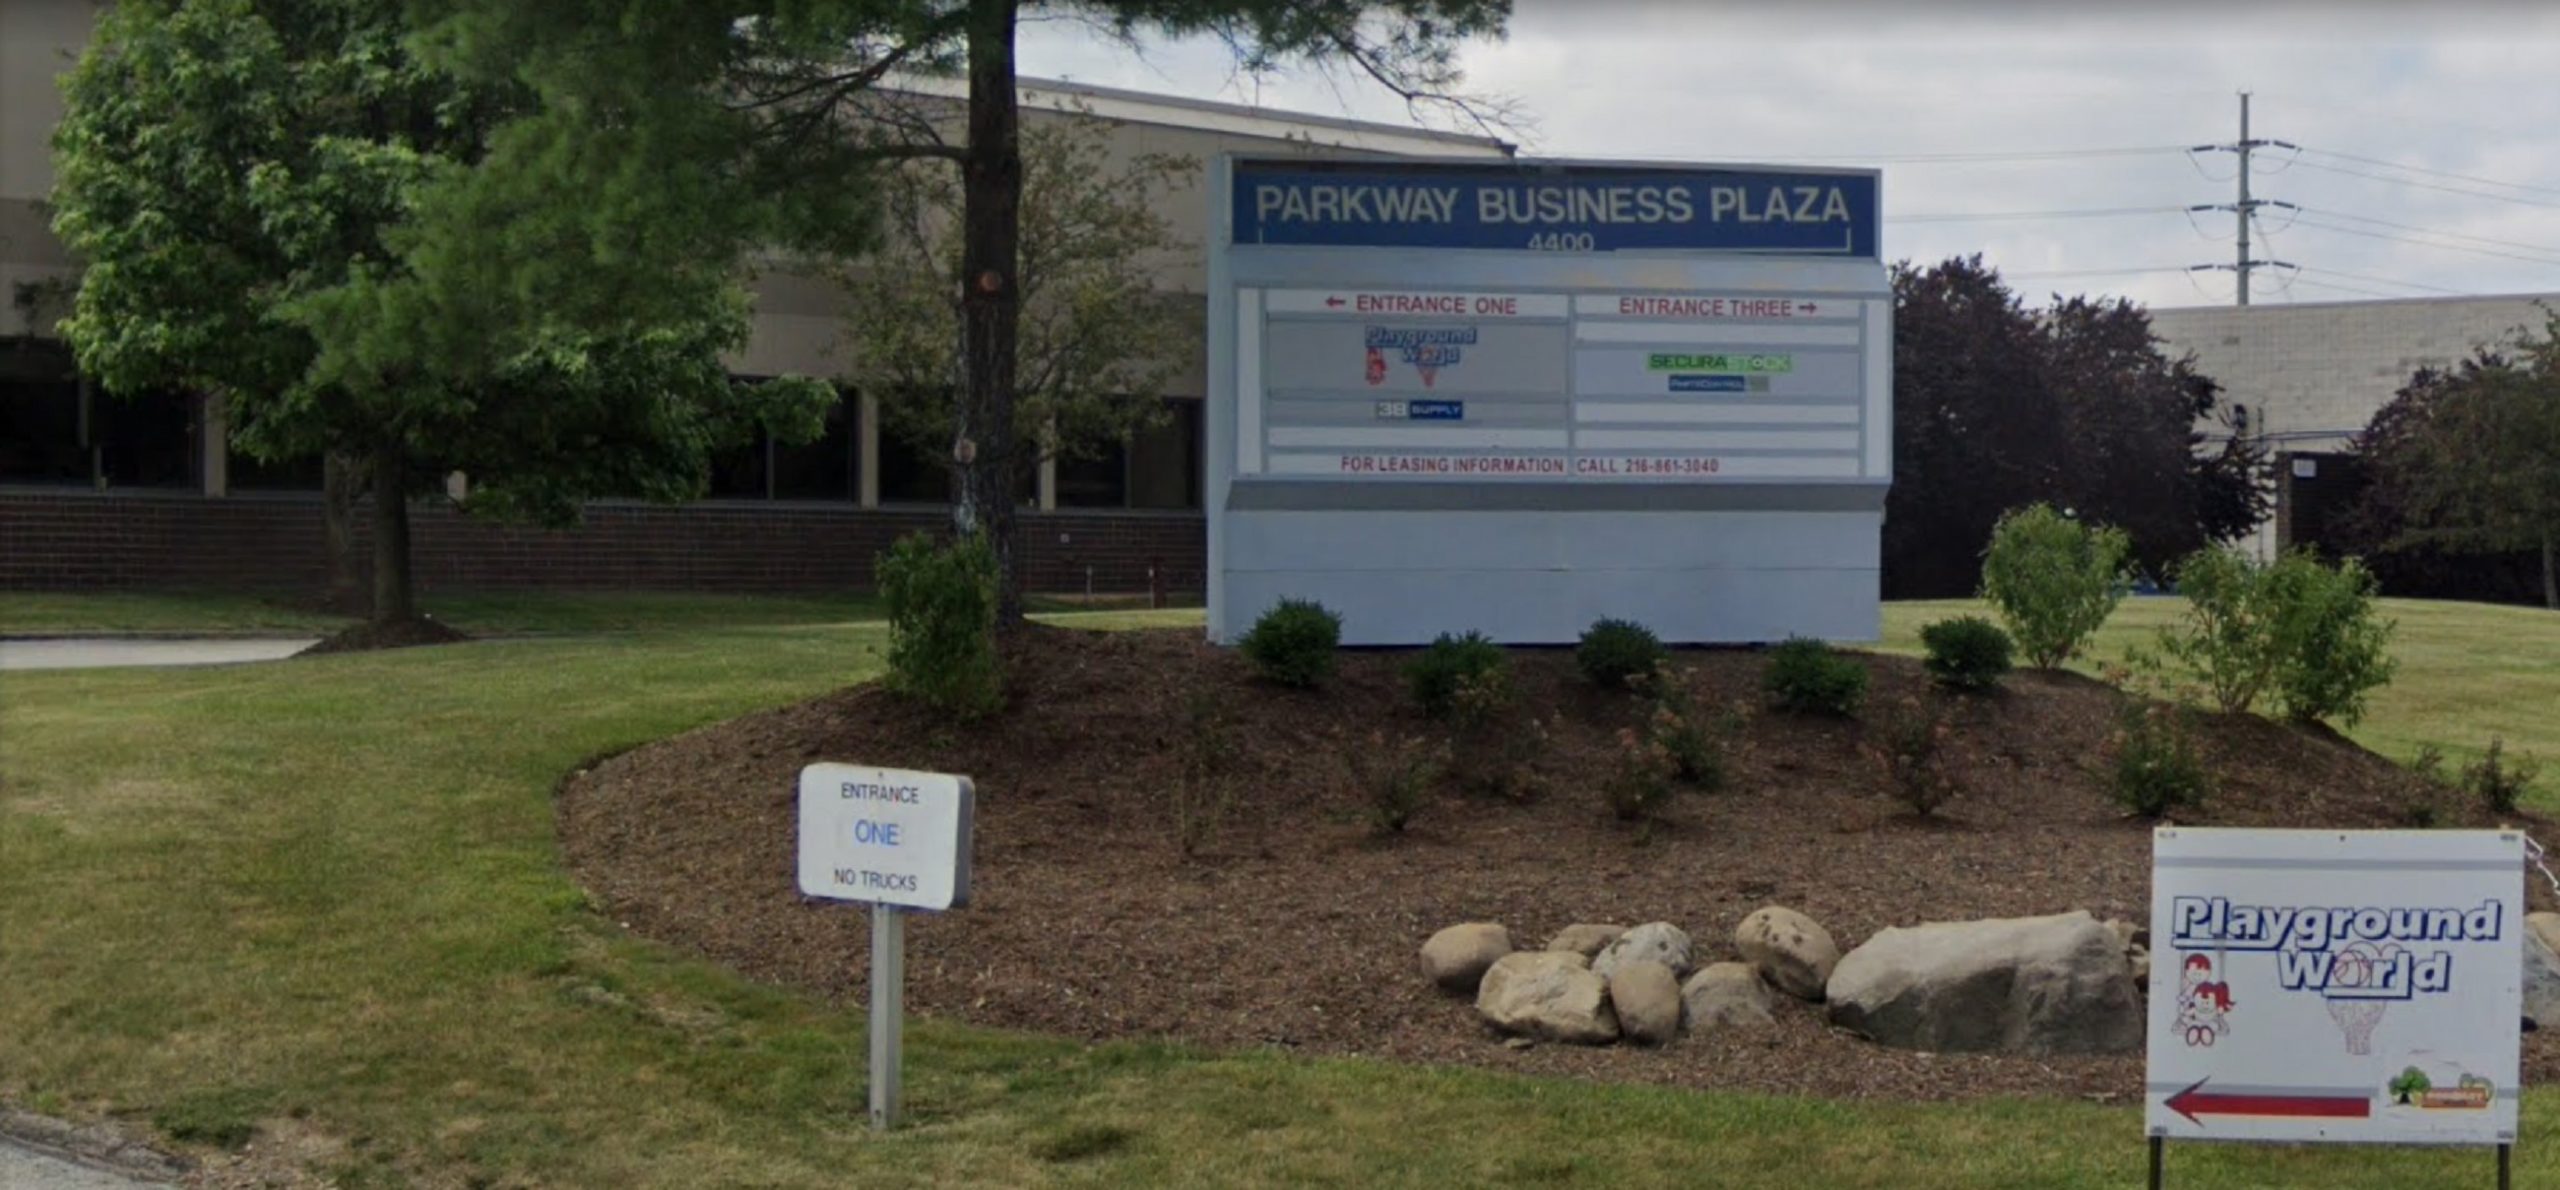 Parkway-Business-Plaza-4400-6,640-SF-Renaissance-Pkwy-Suite-4